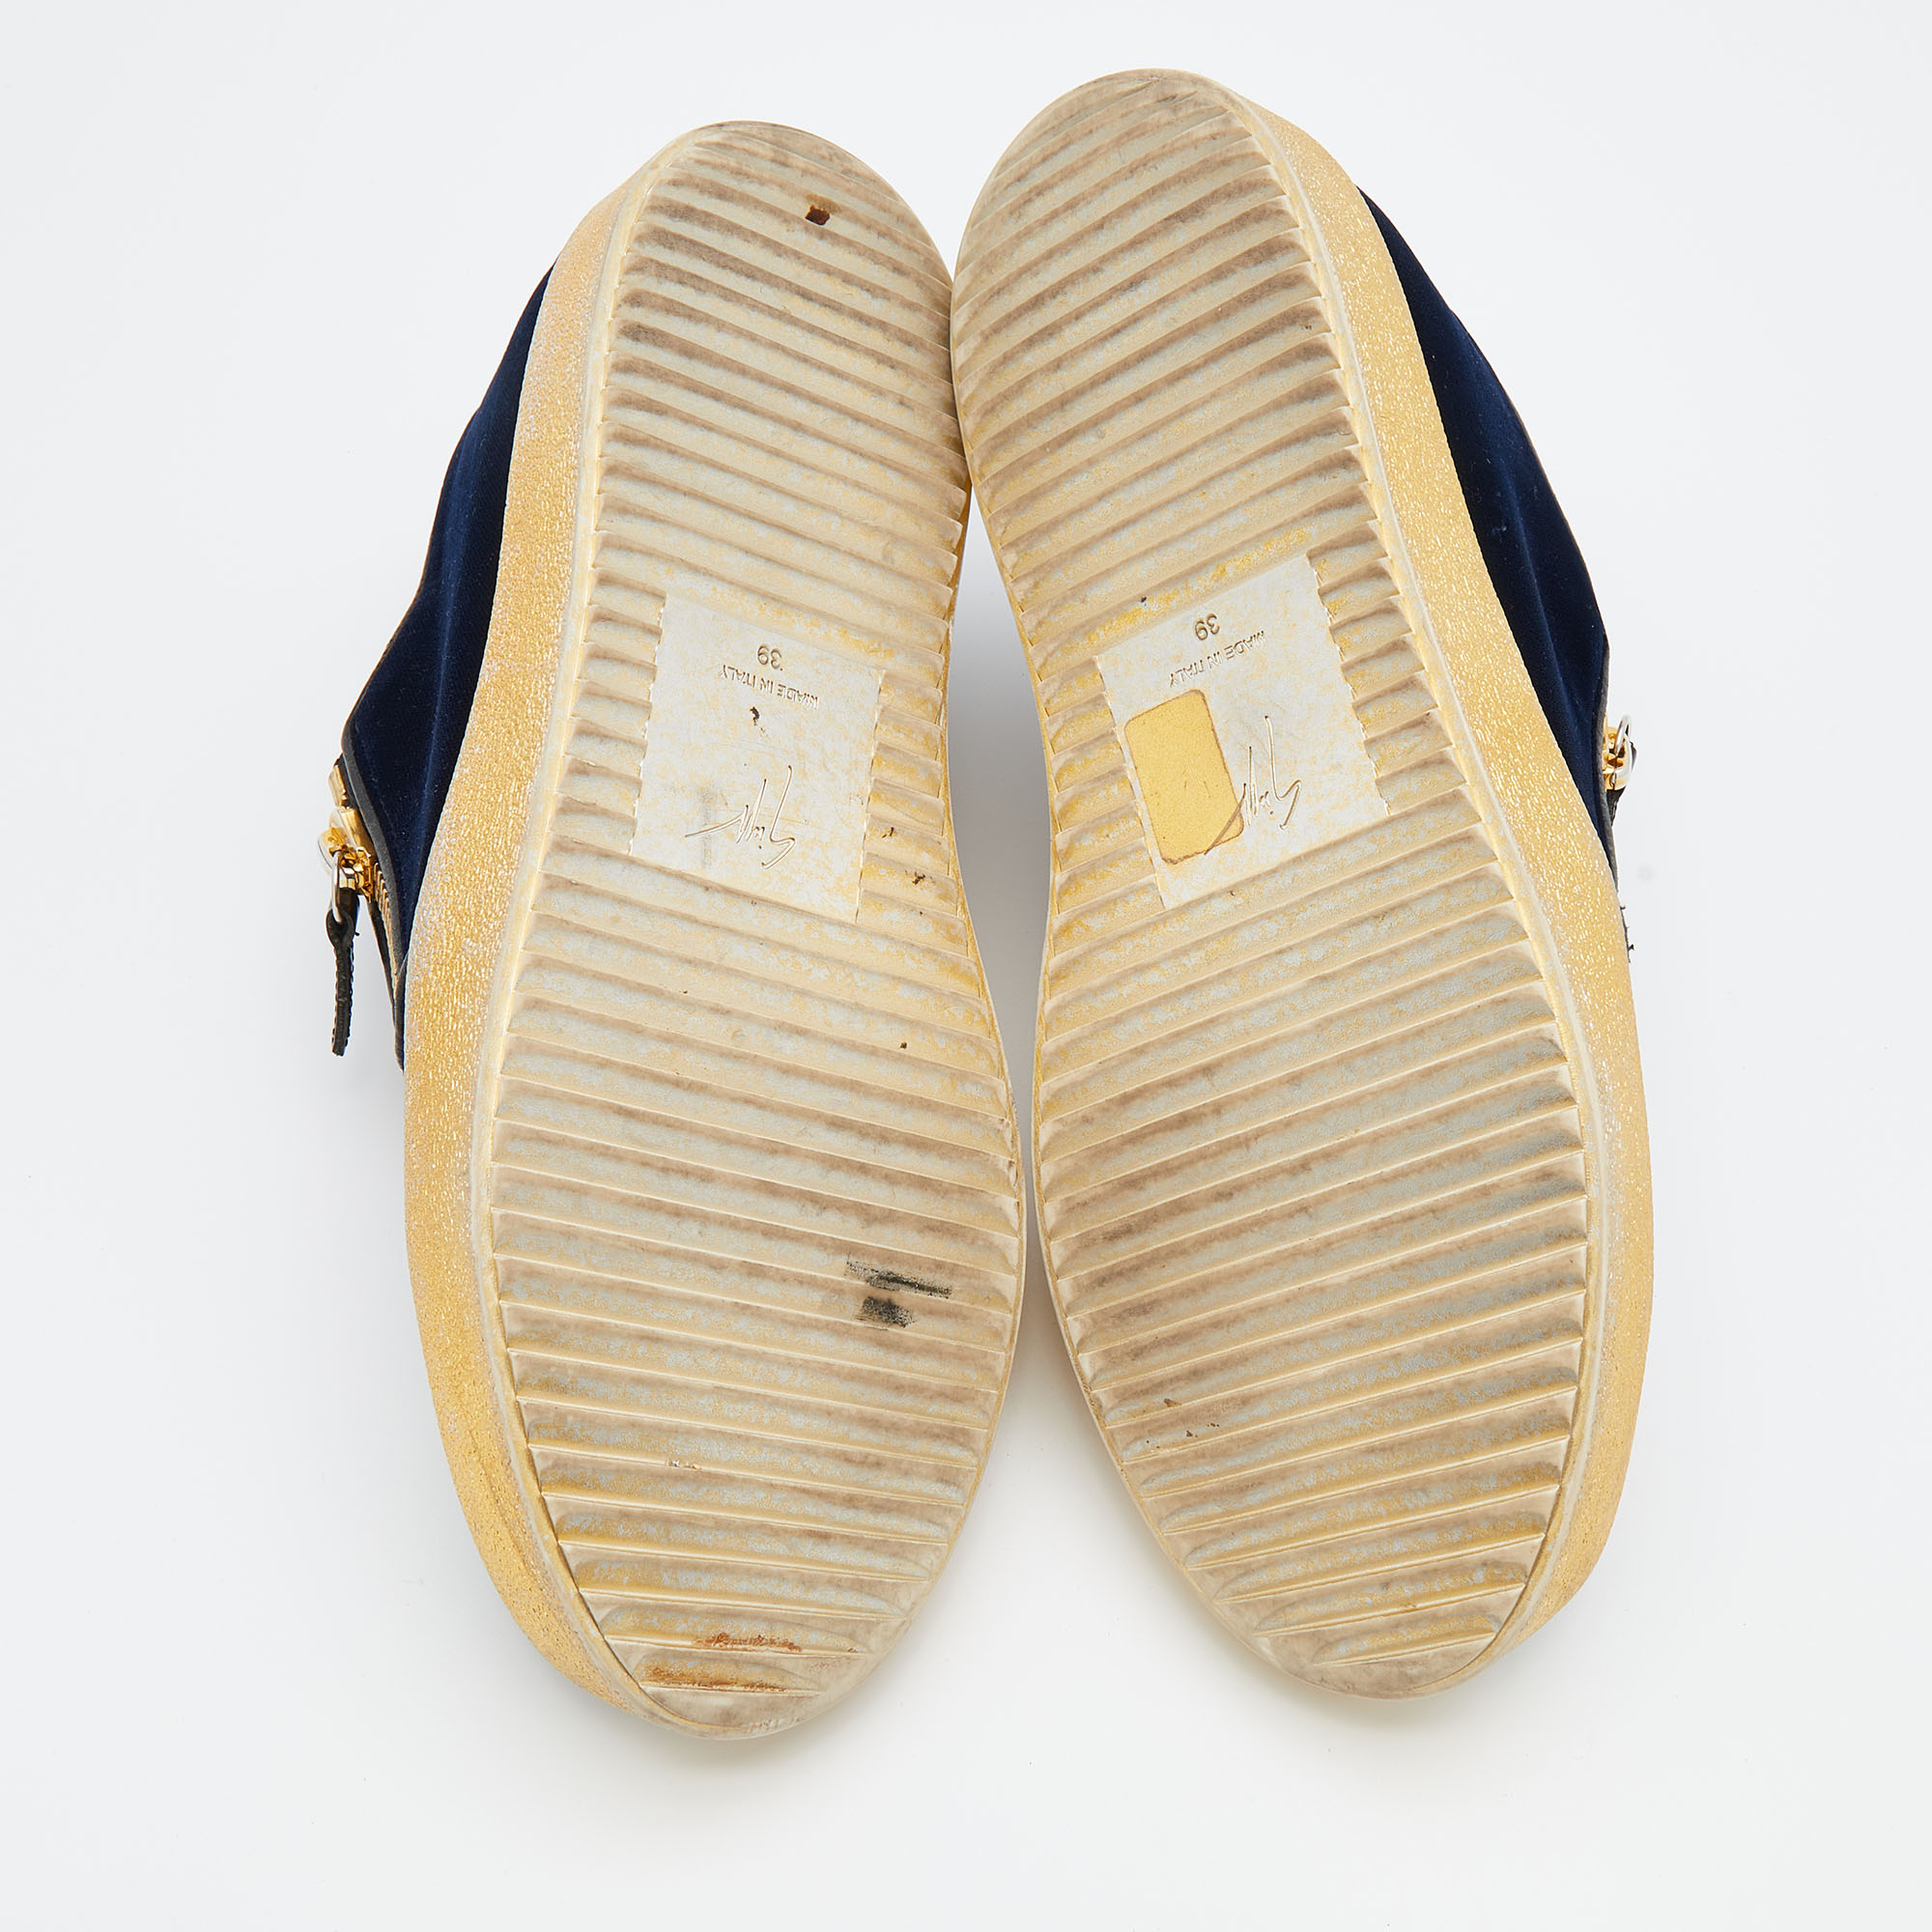 Giuseppe Zanotti Navy Blue Velvet May London Slip On Sneakers Size 39